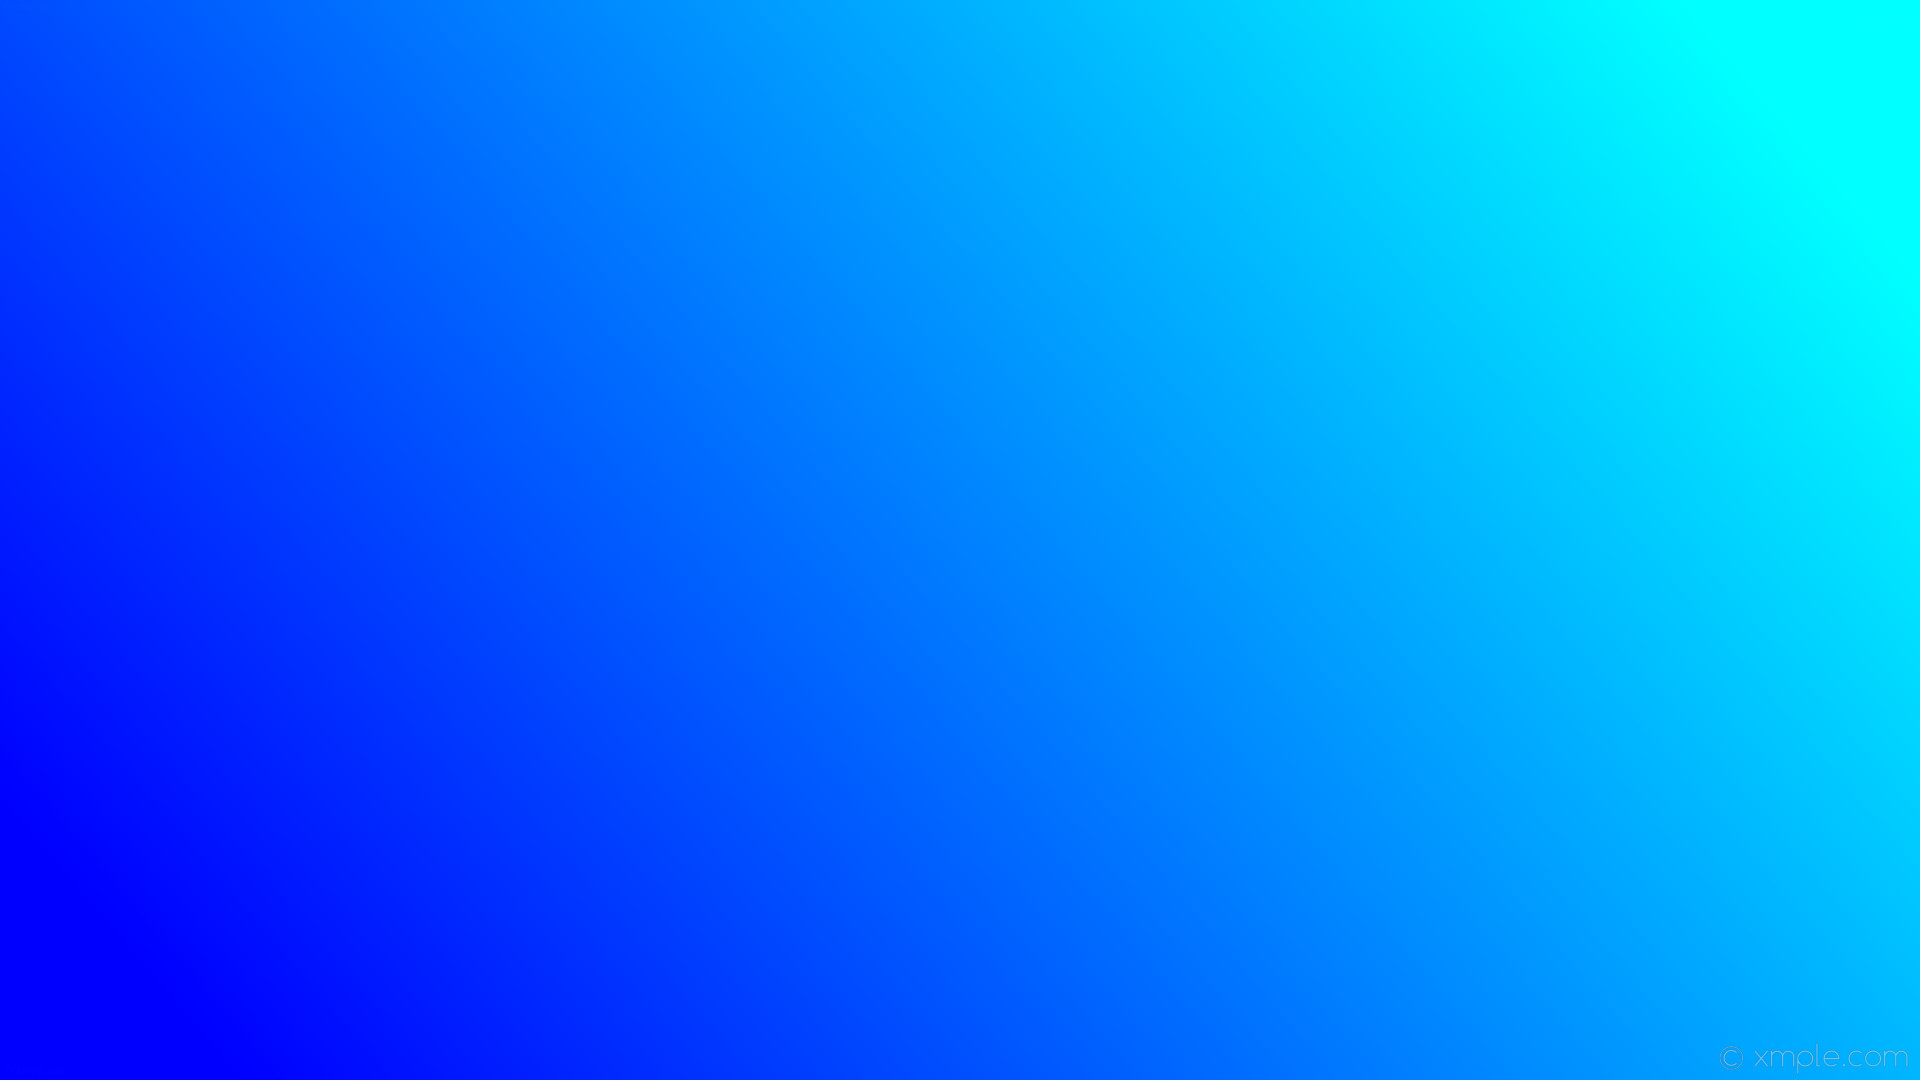 1920x1080 wallpaper linear gradient blue aqua cyan #00ffff #0000ff 15Â°